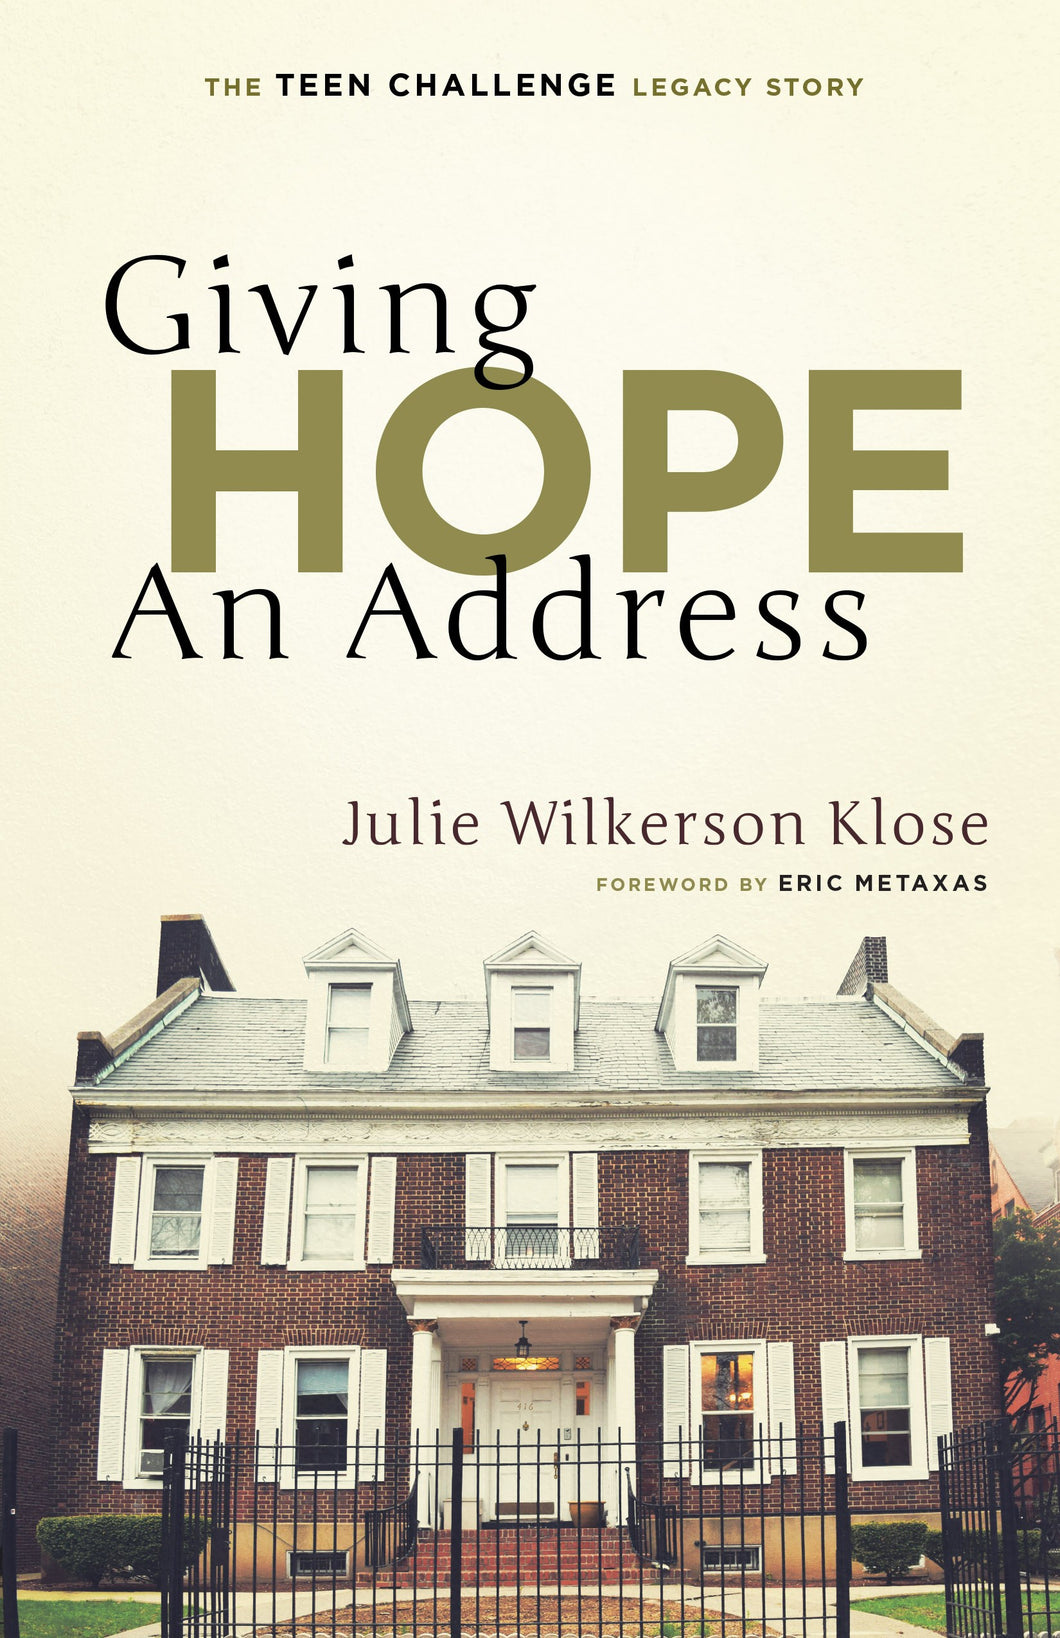 GIVING HOPE AN ADDRESS